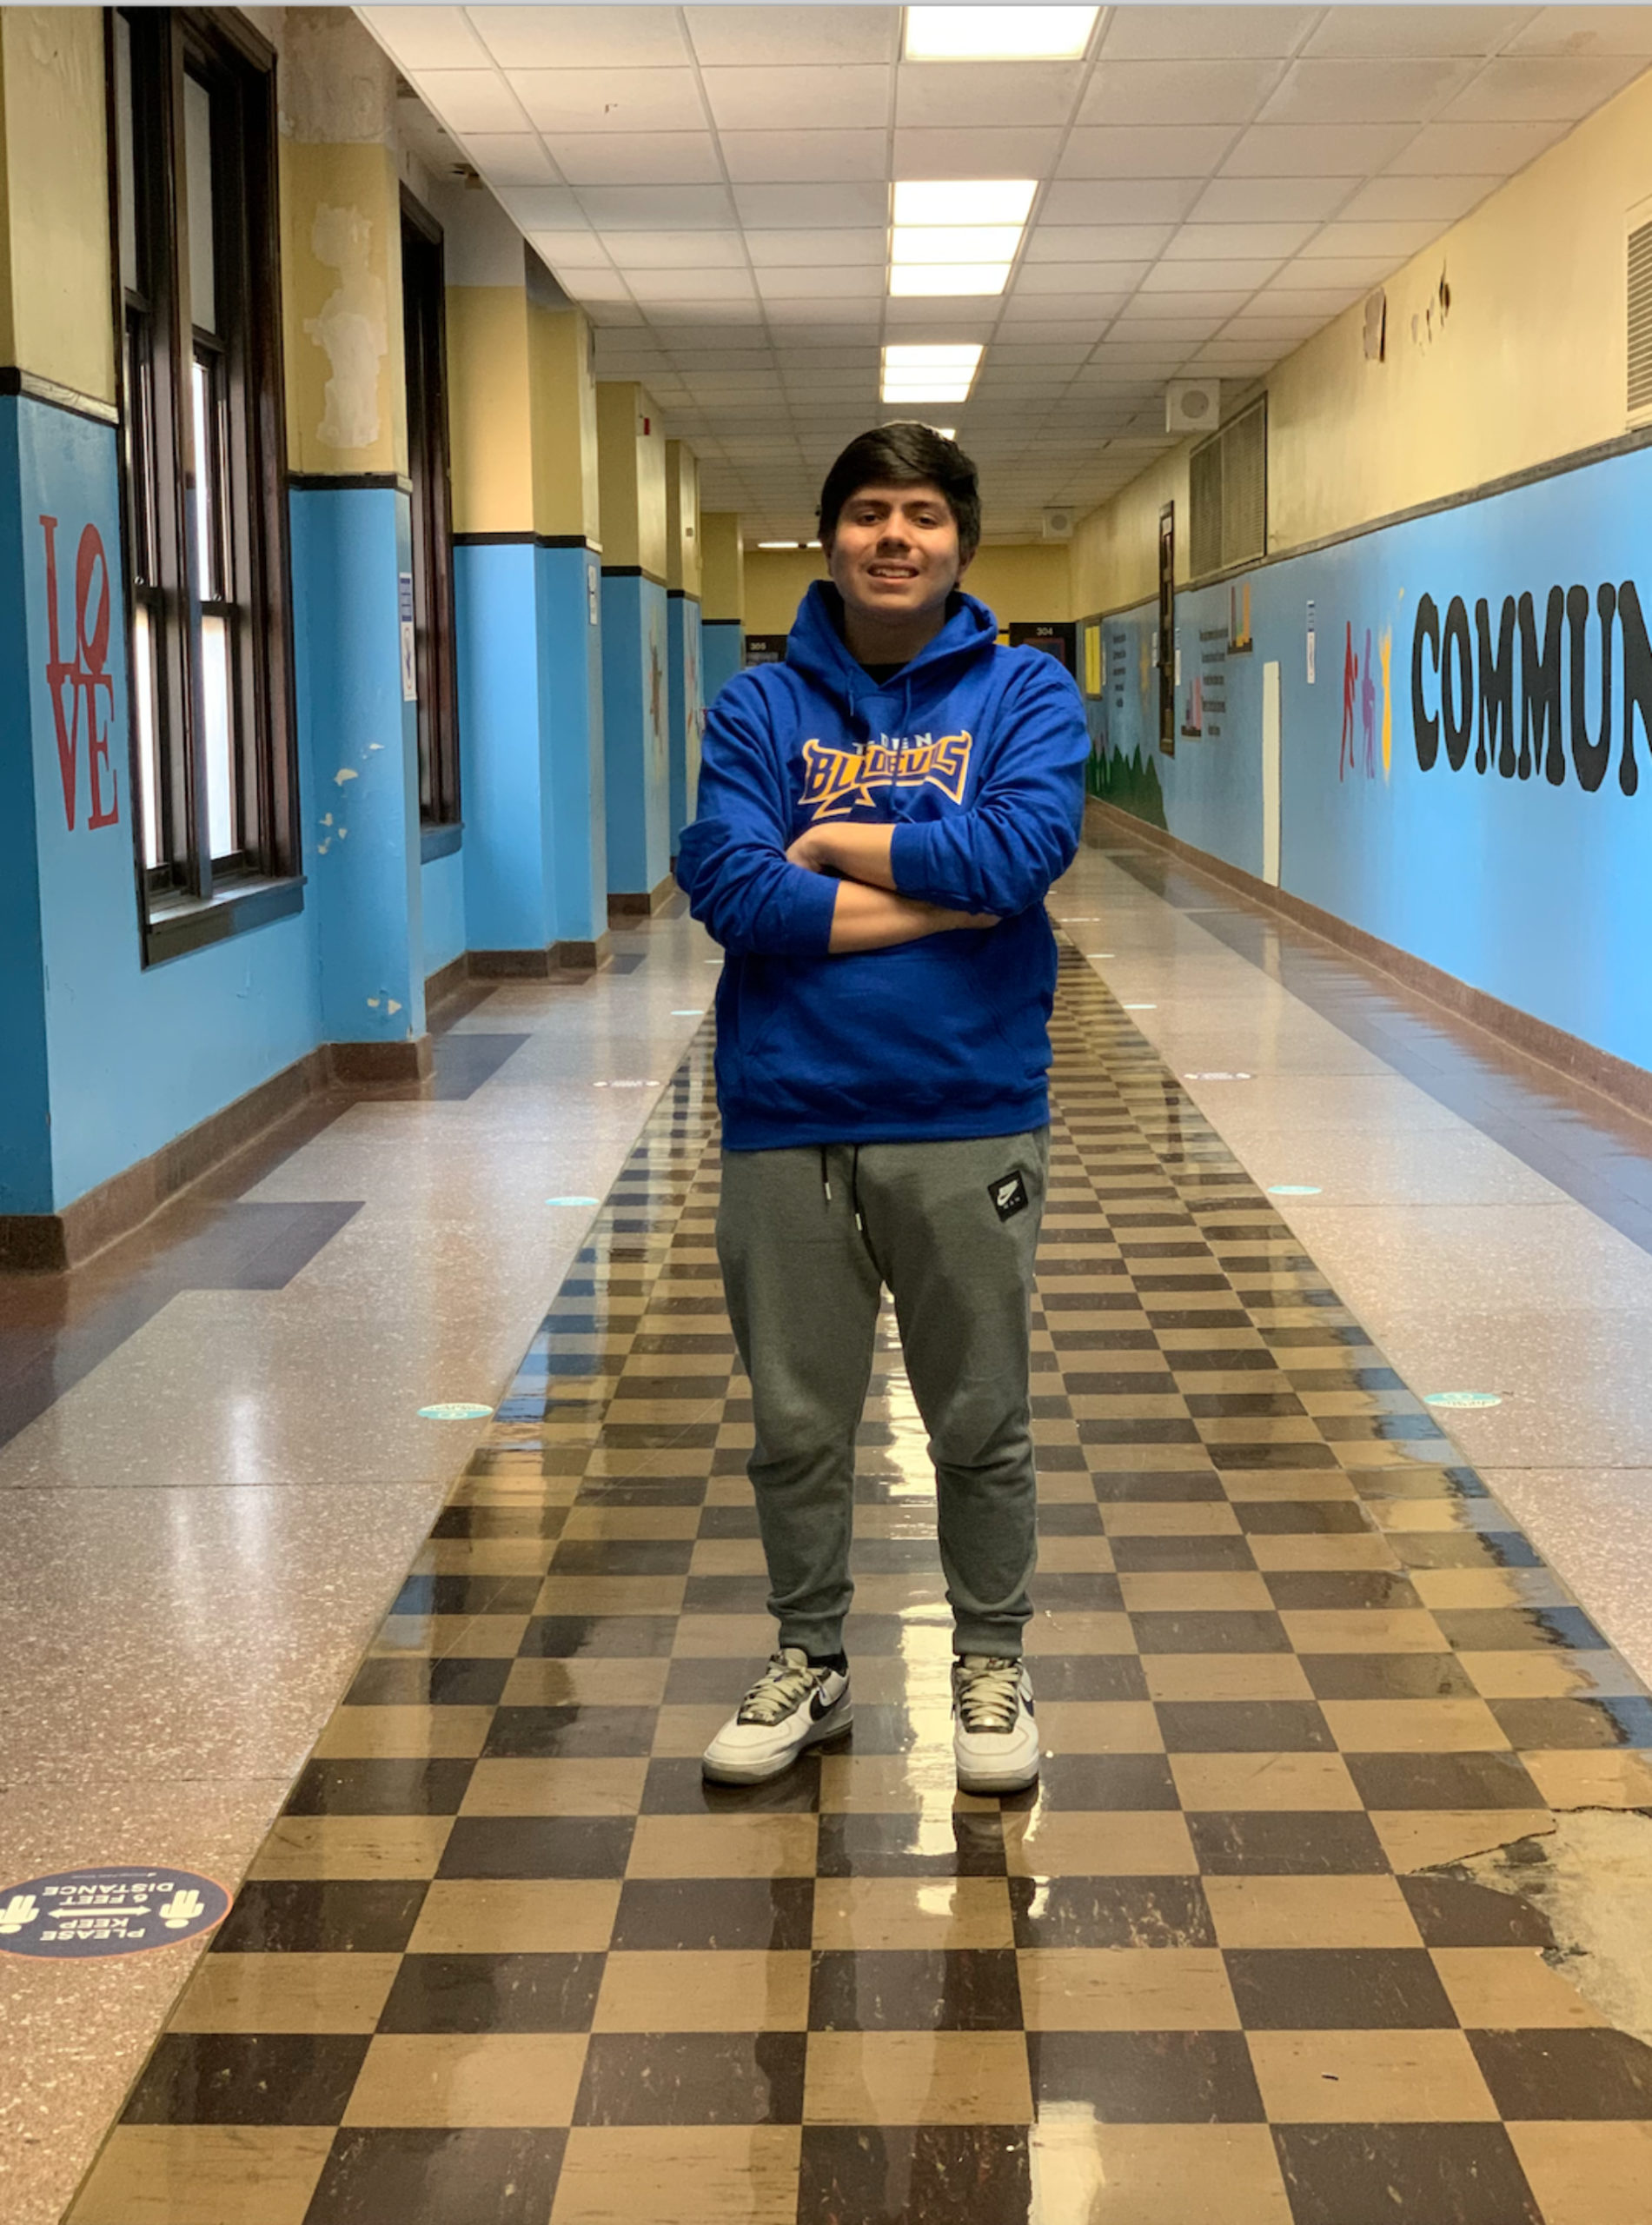 Roberto Gonzalez standing in a hallway